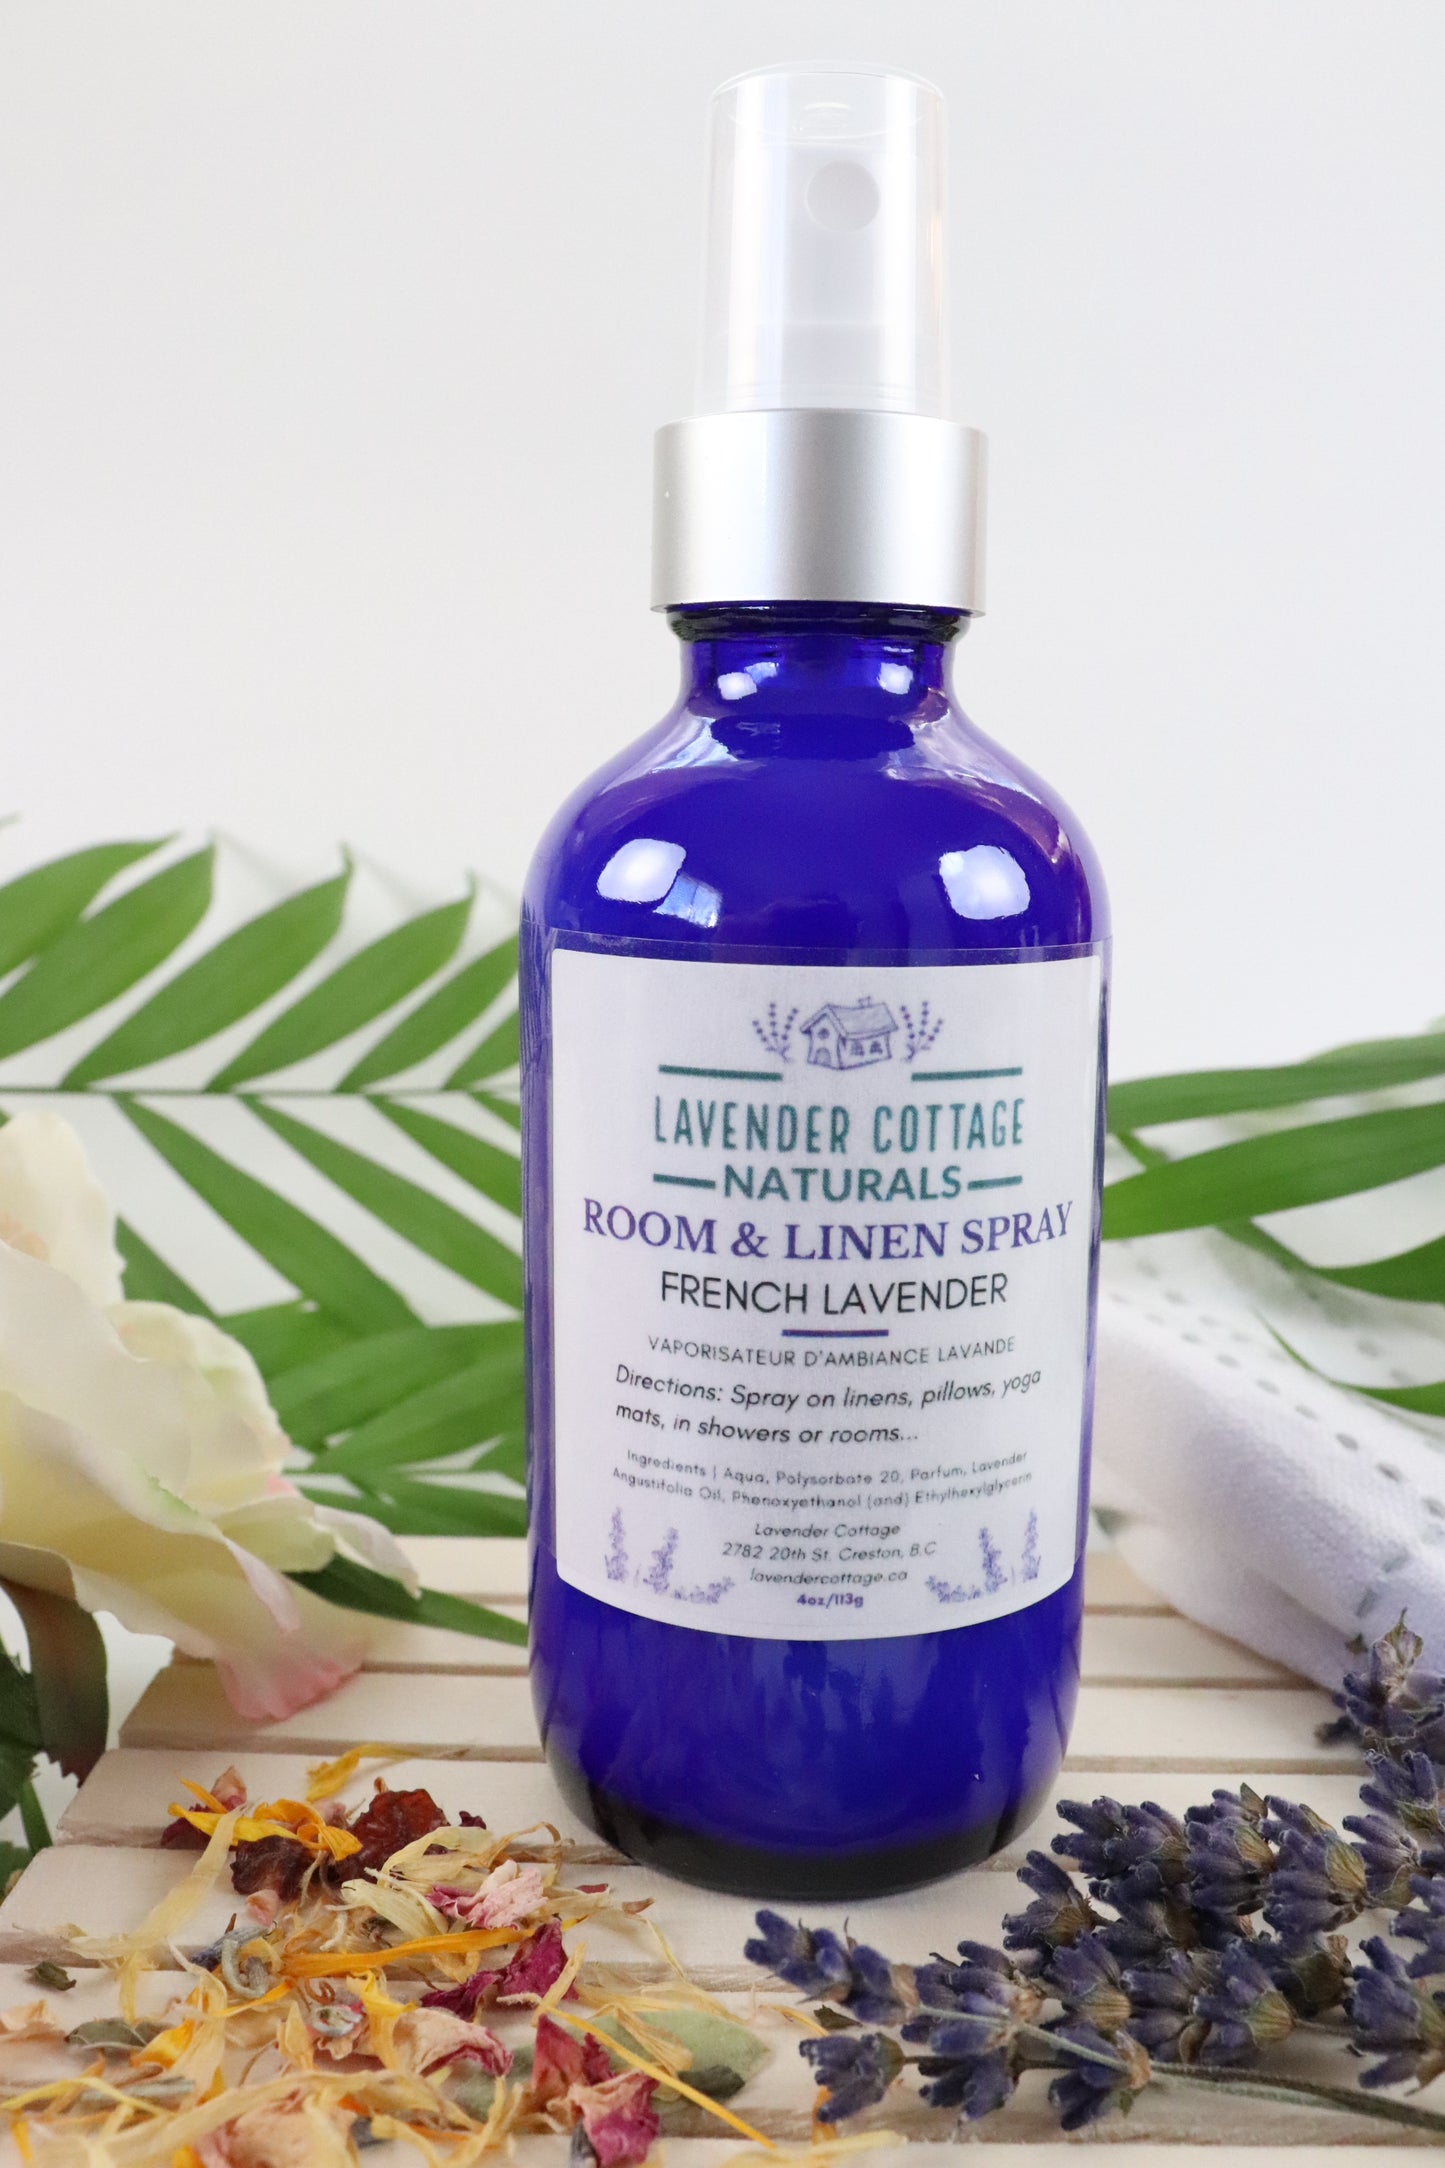 Room & Linen Spray Lavender - Wholesale (6 Bottles)